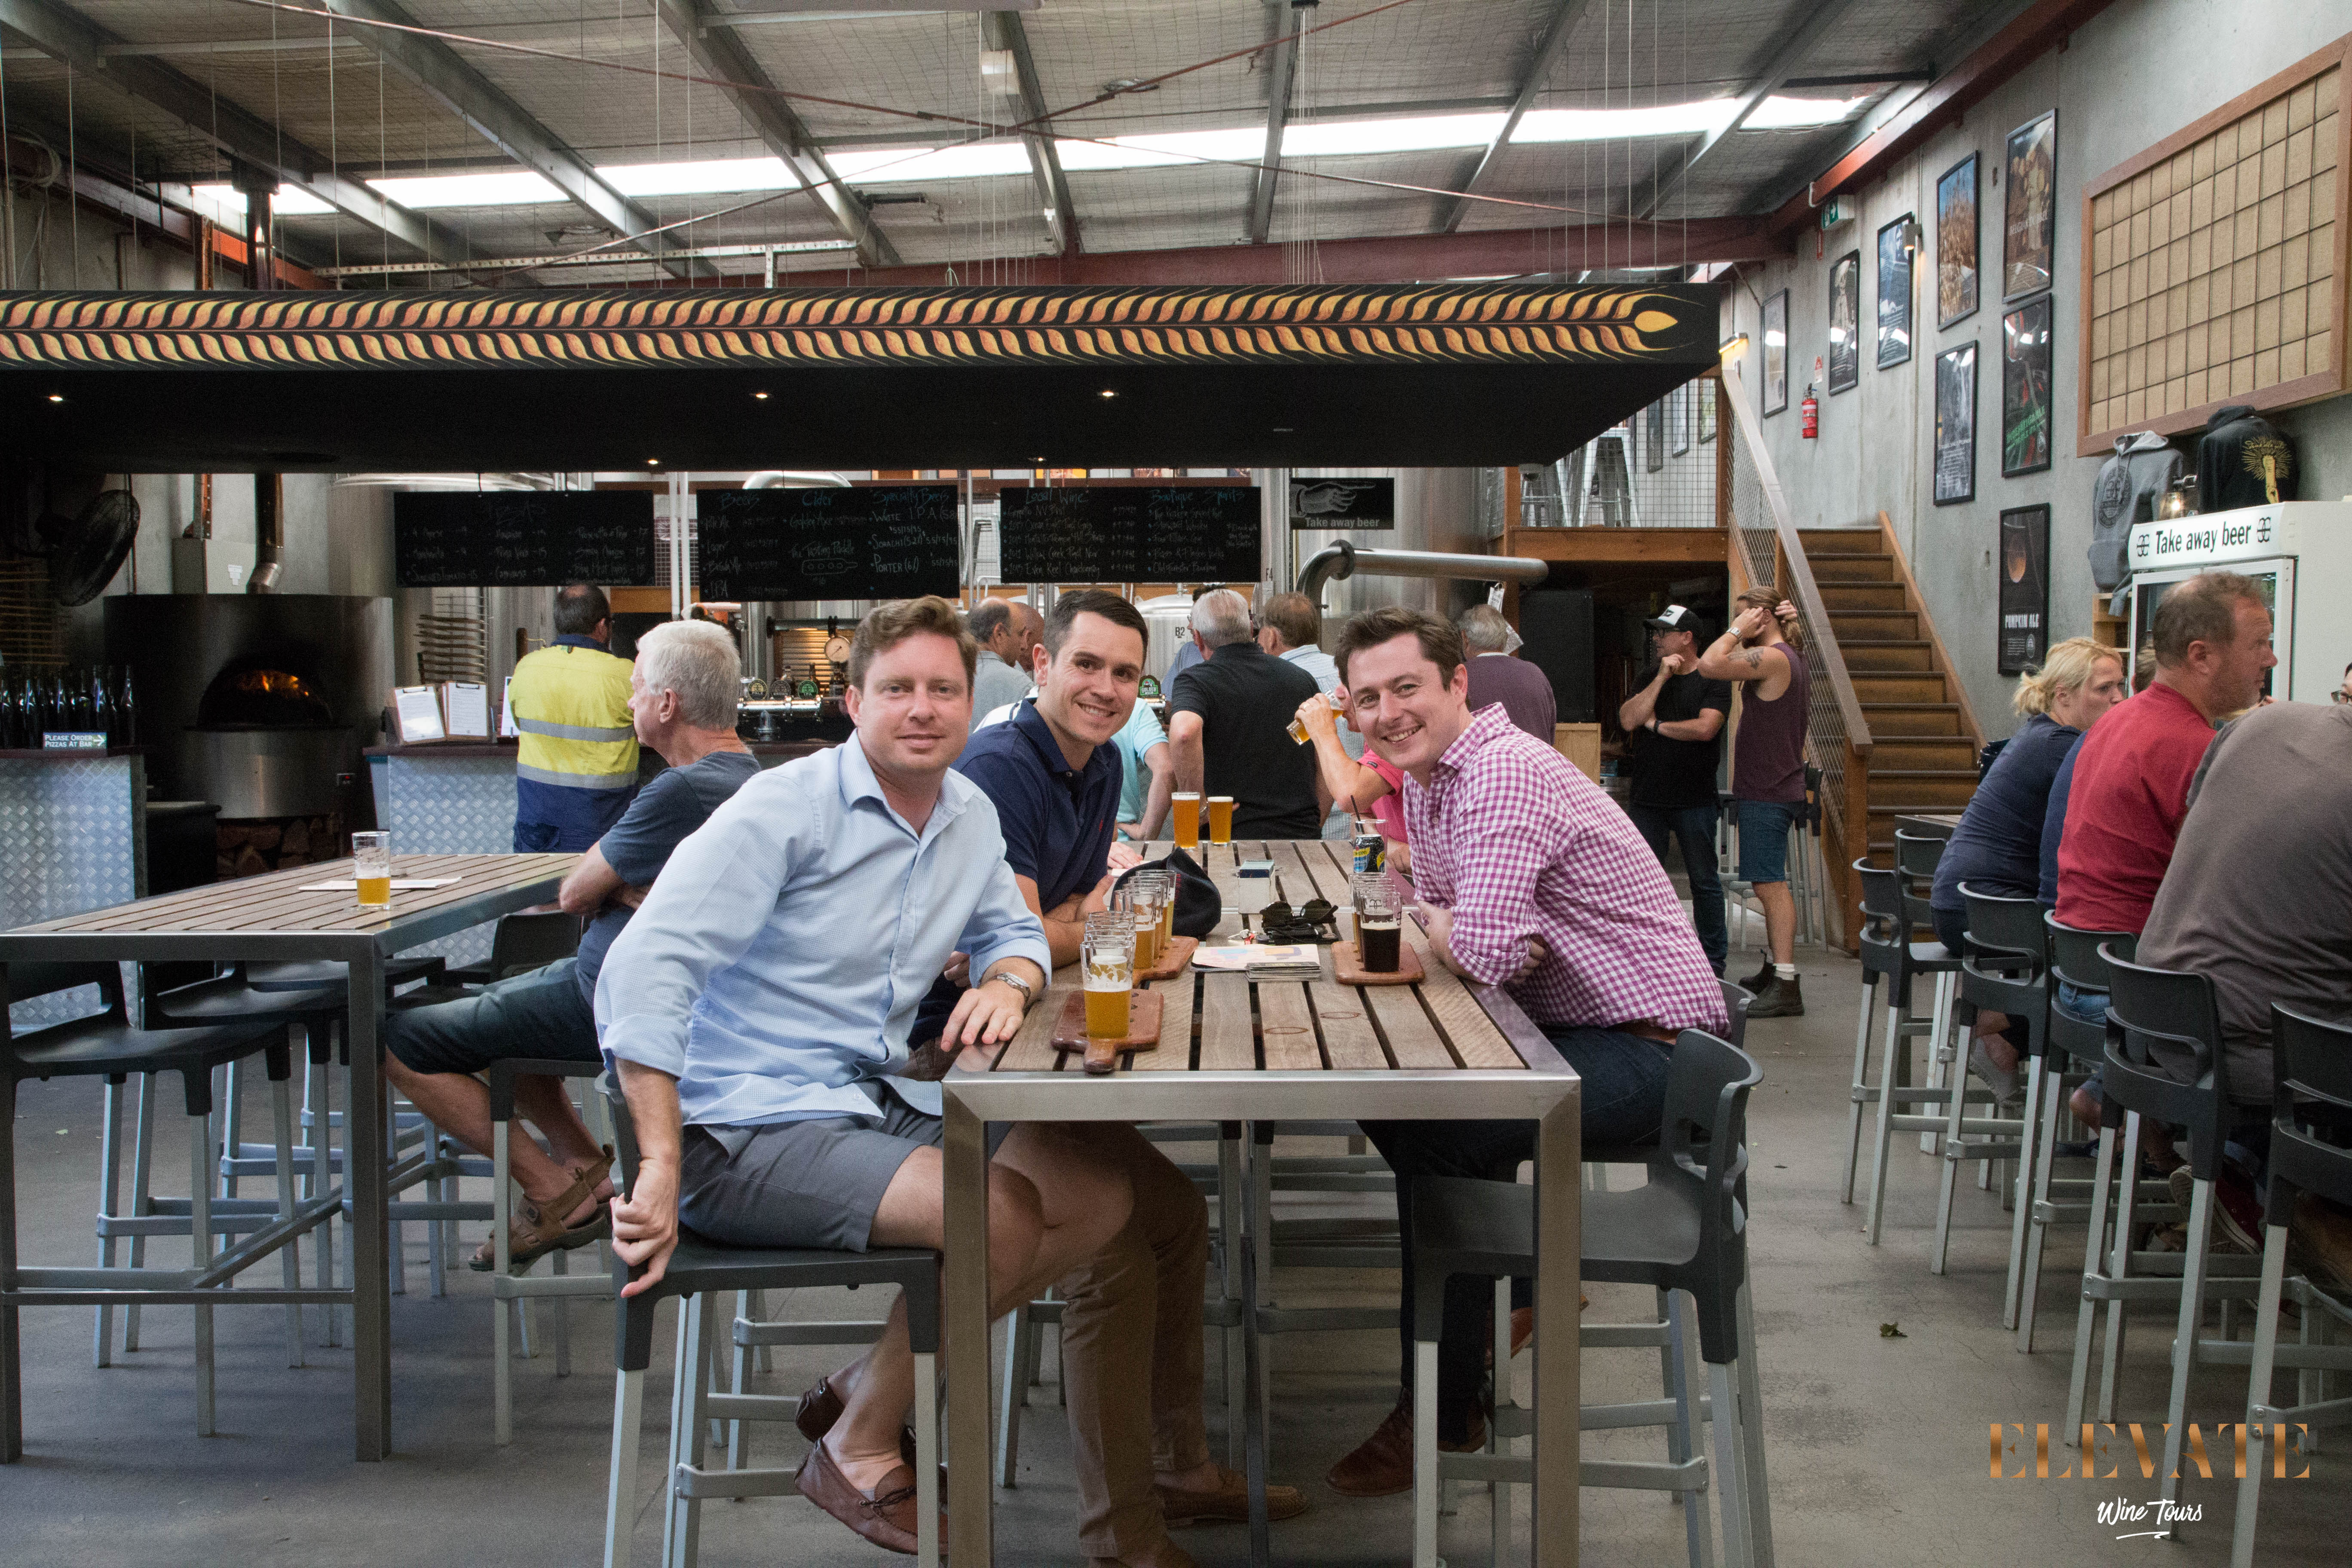 Group photo at Mornington Peninsula Brewery